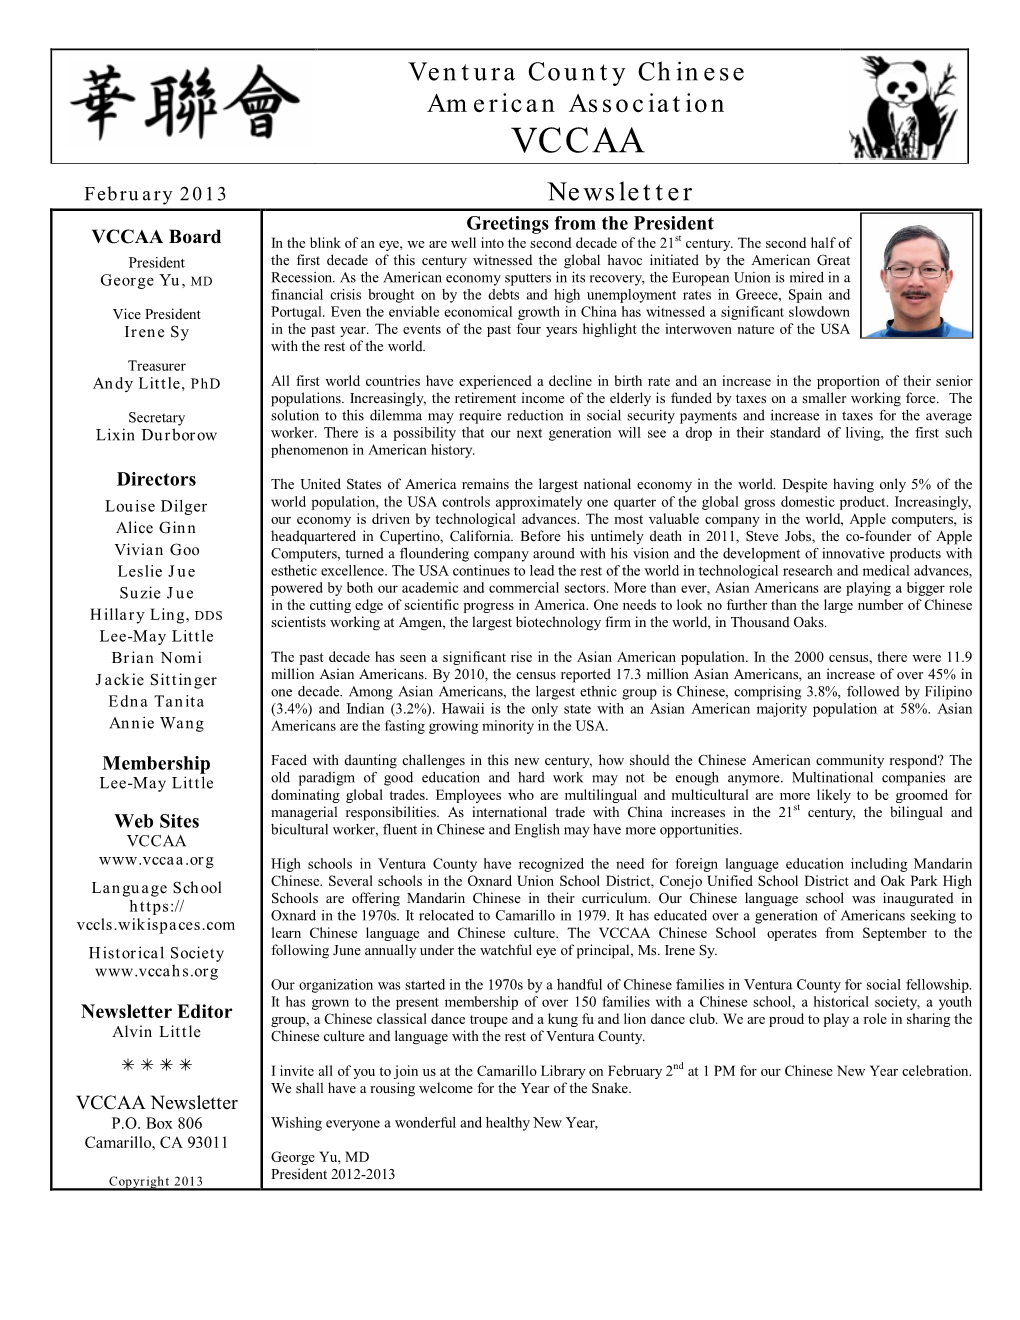 Newsletter of February 2013